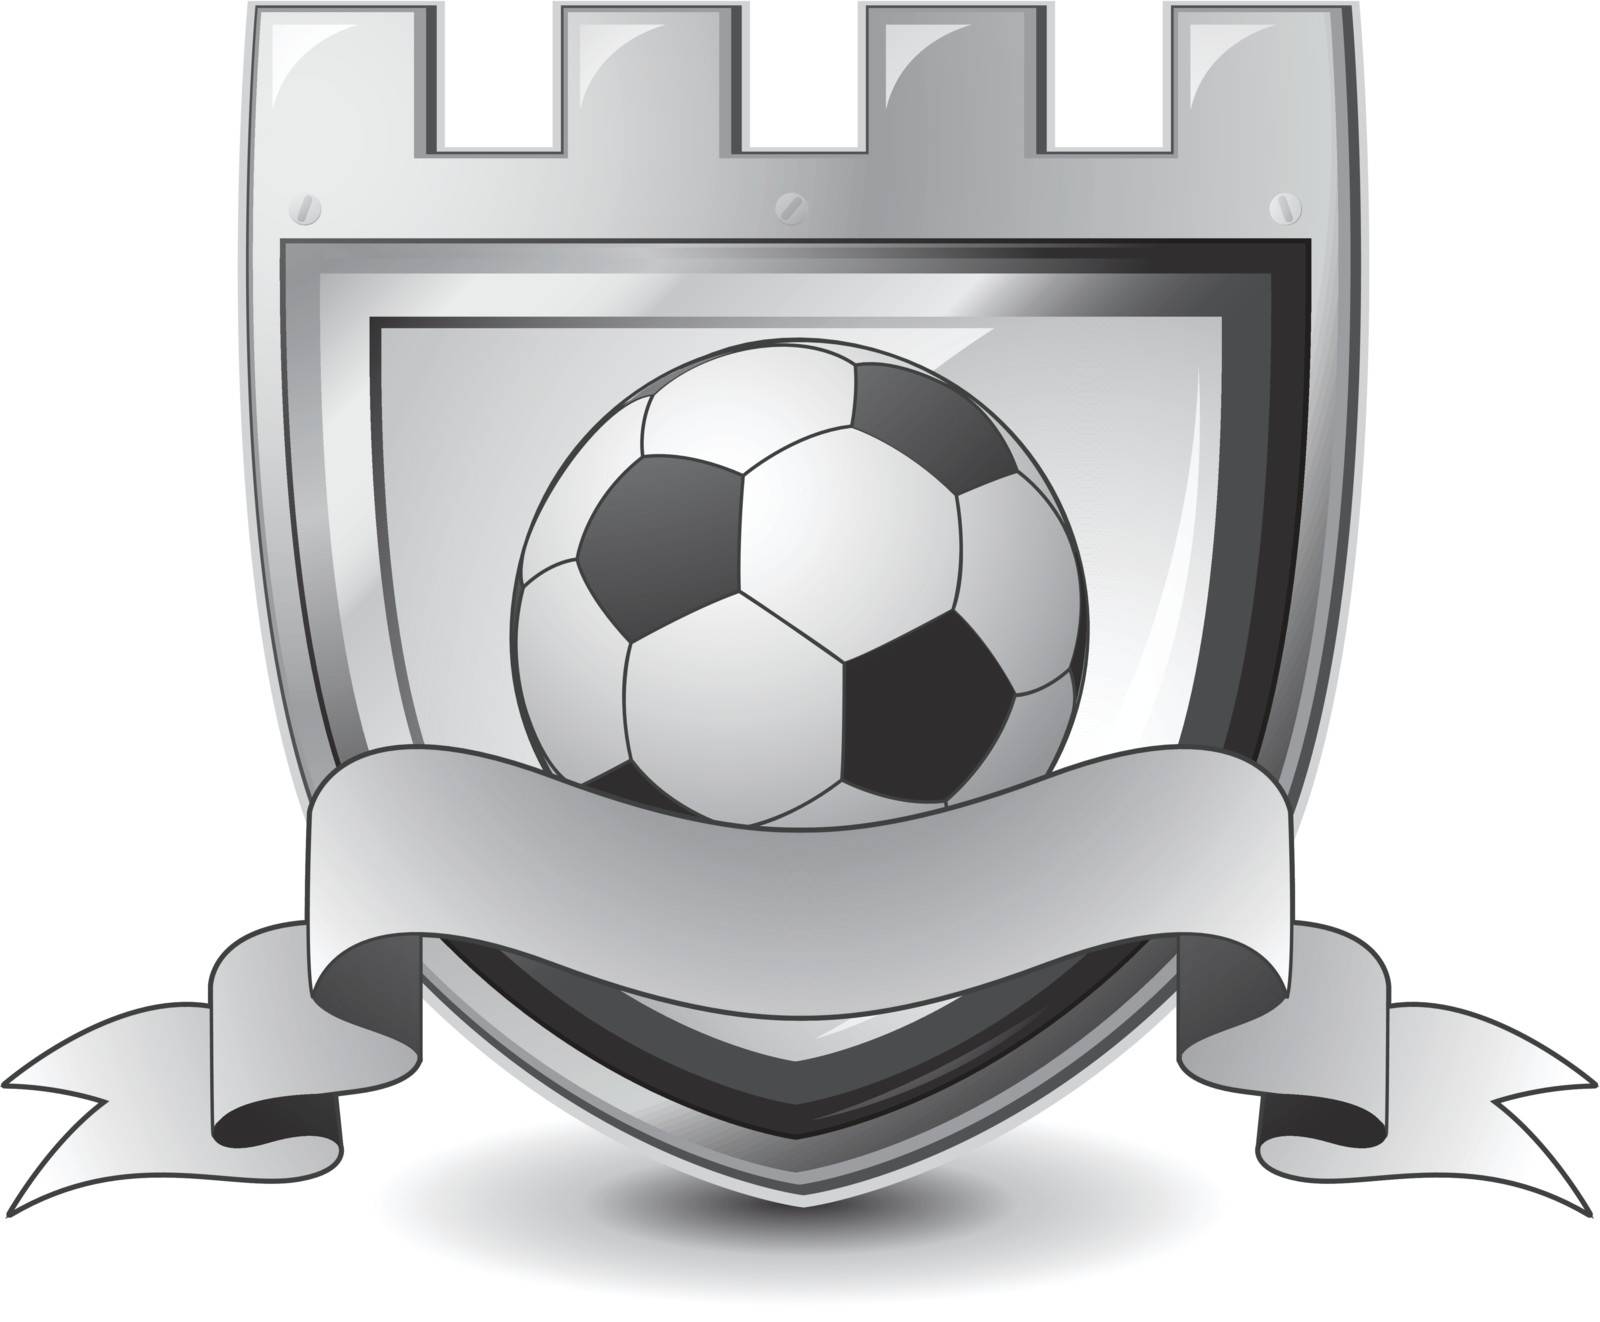 Soccer emblem by hugolacasse